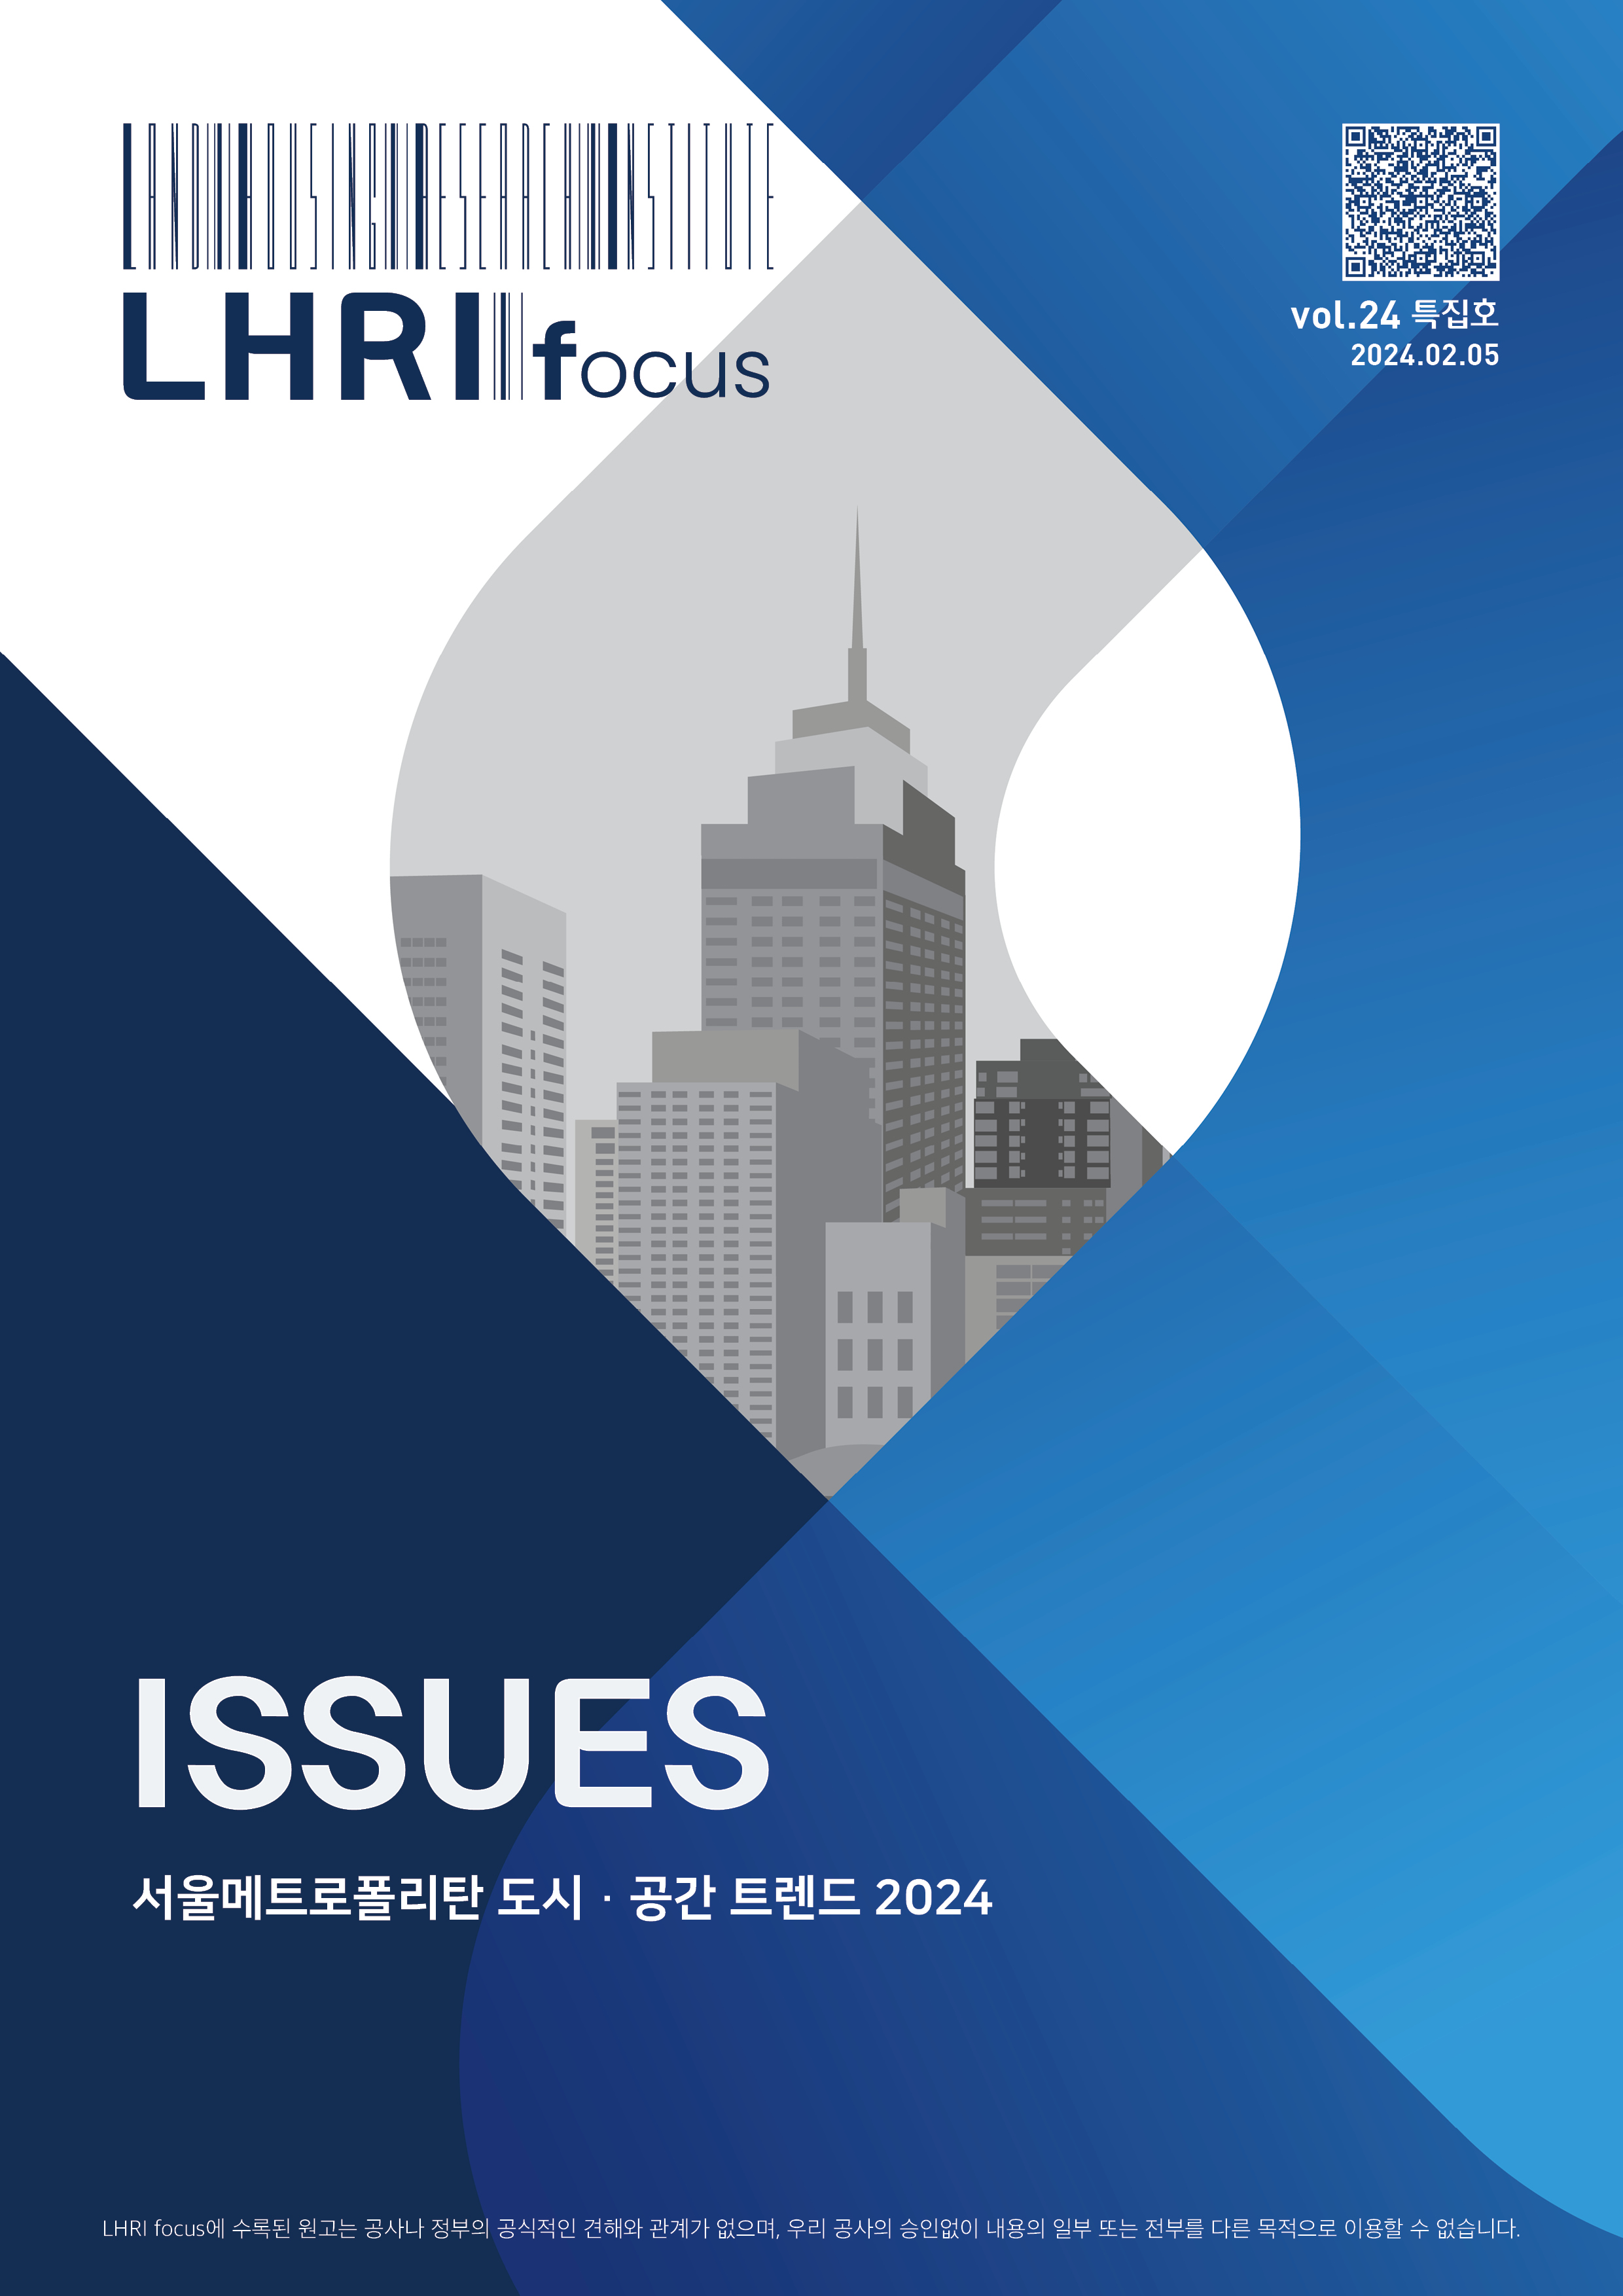 LHRI focus 24호 특집호